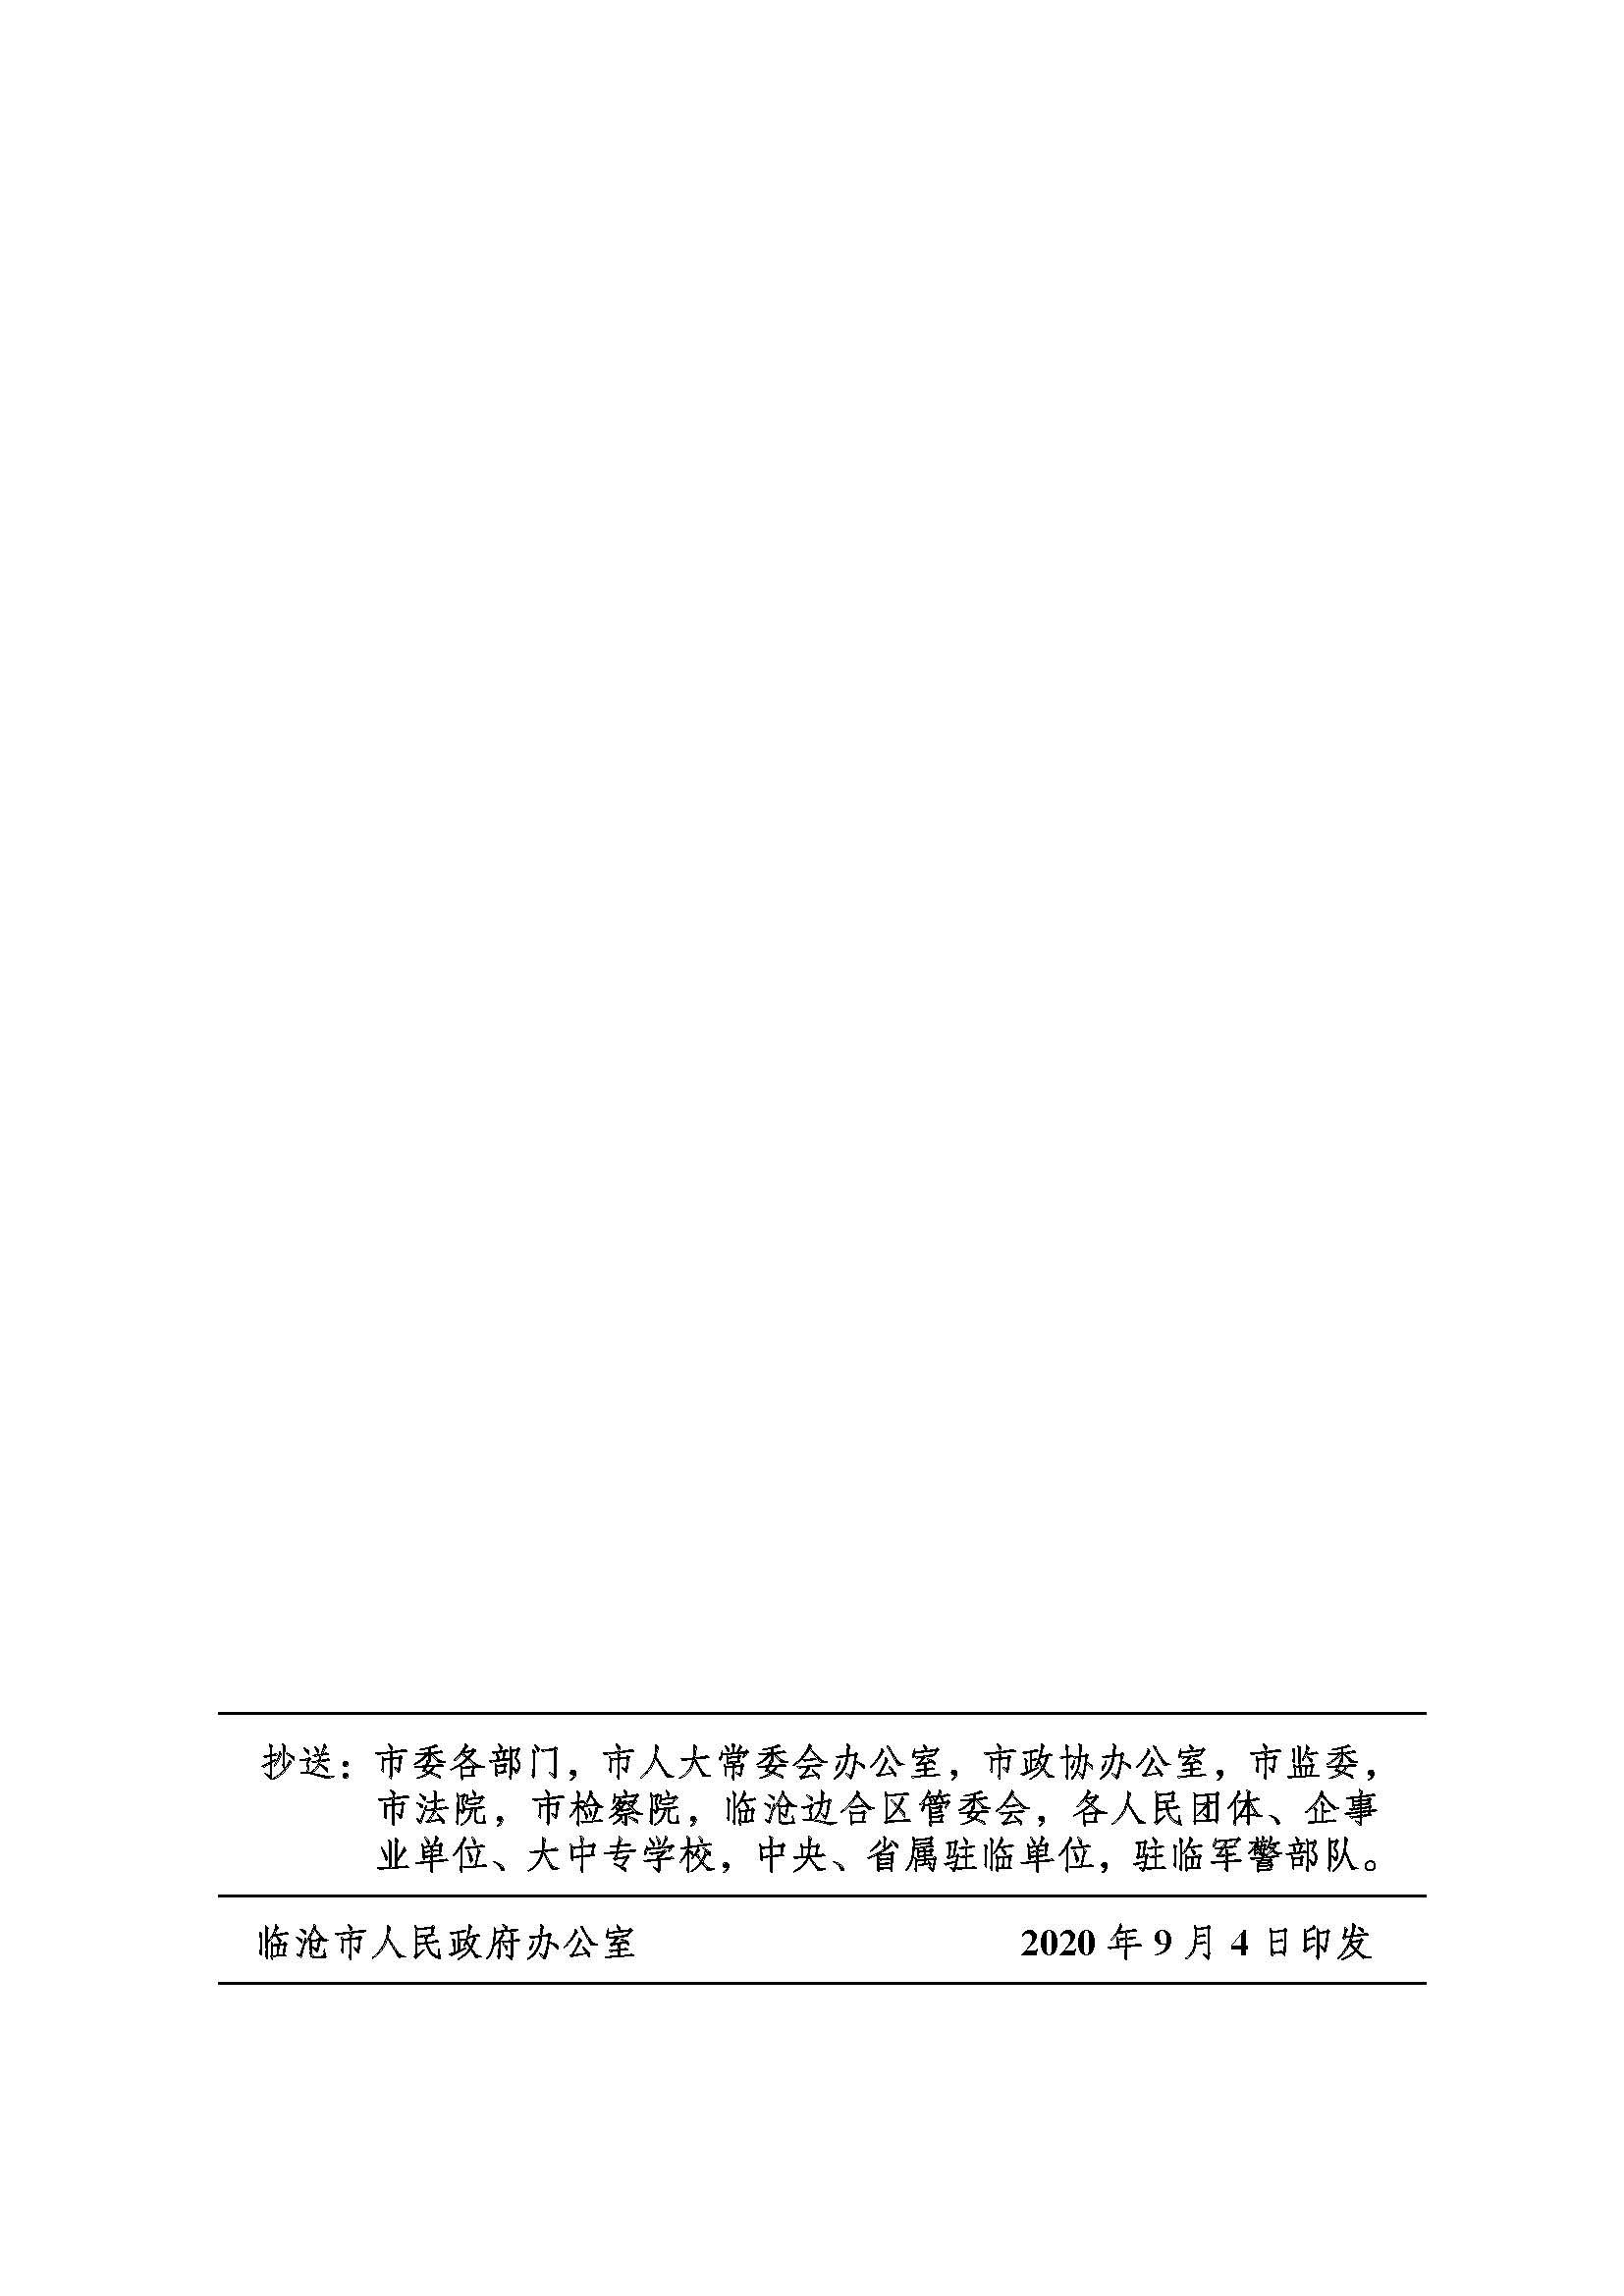 临沧市人民政府办公室关于做好调整370项行政权力事项工作的通知_页面_51